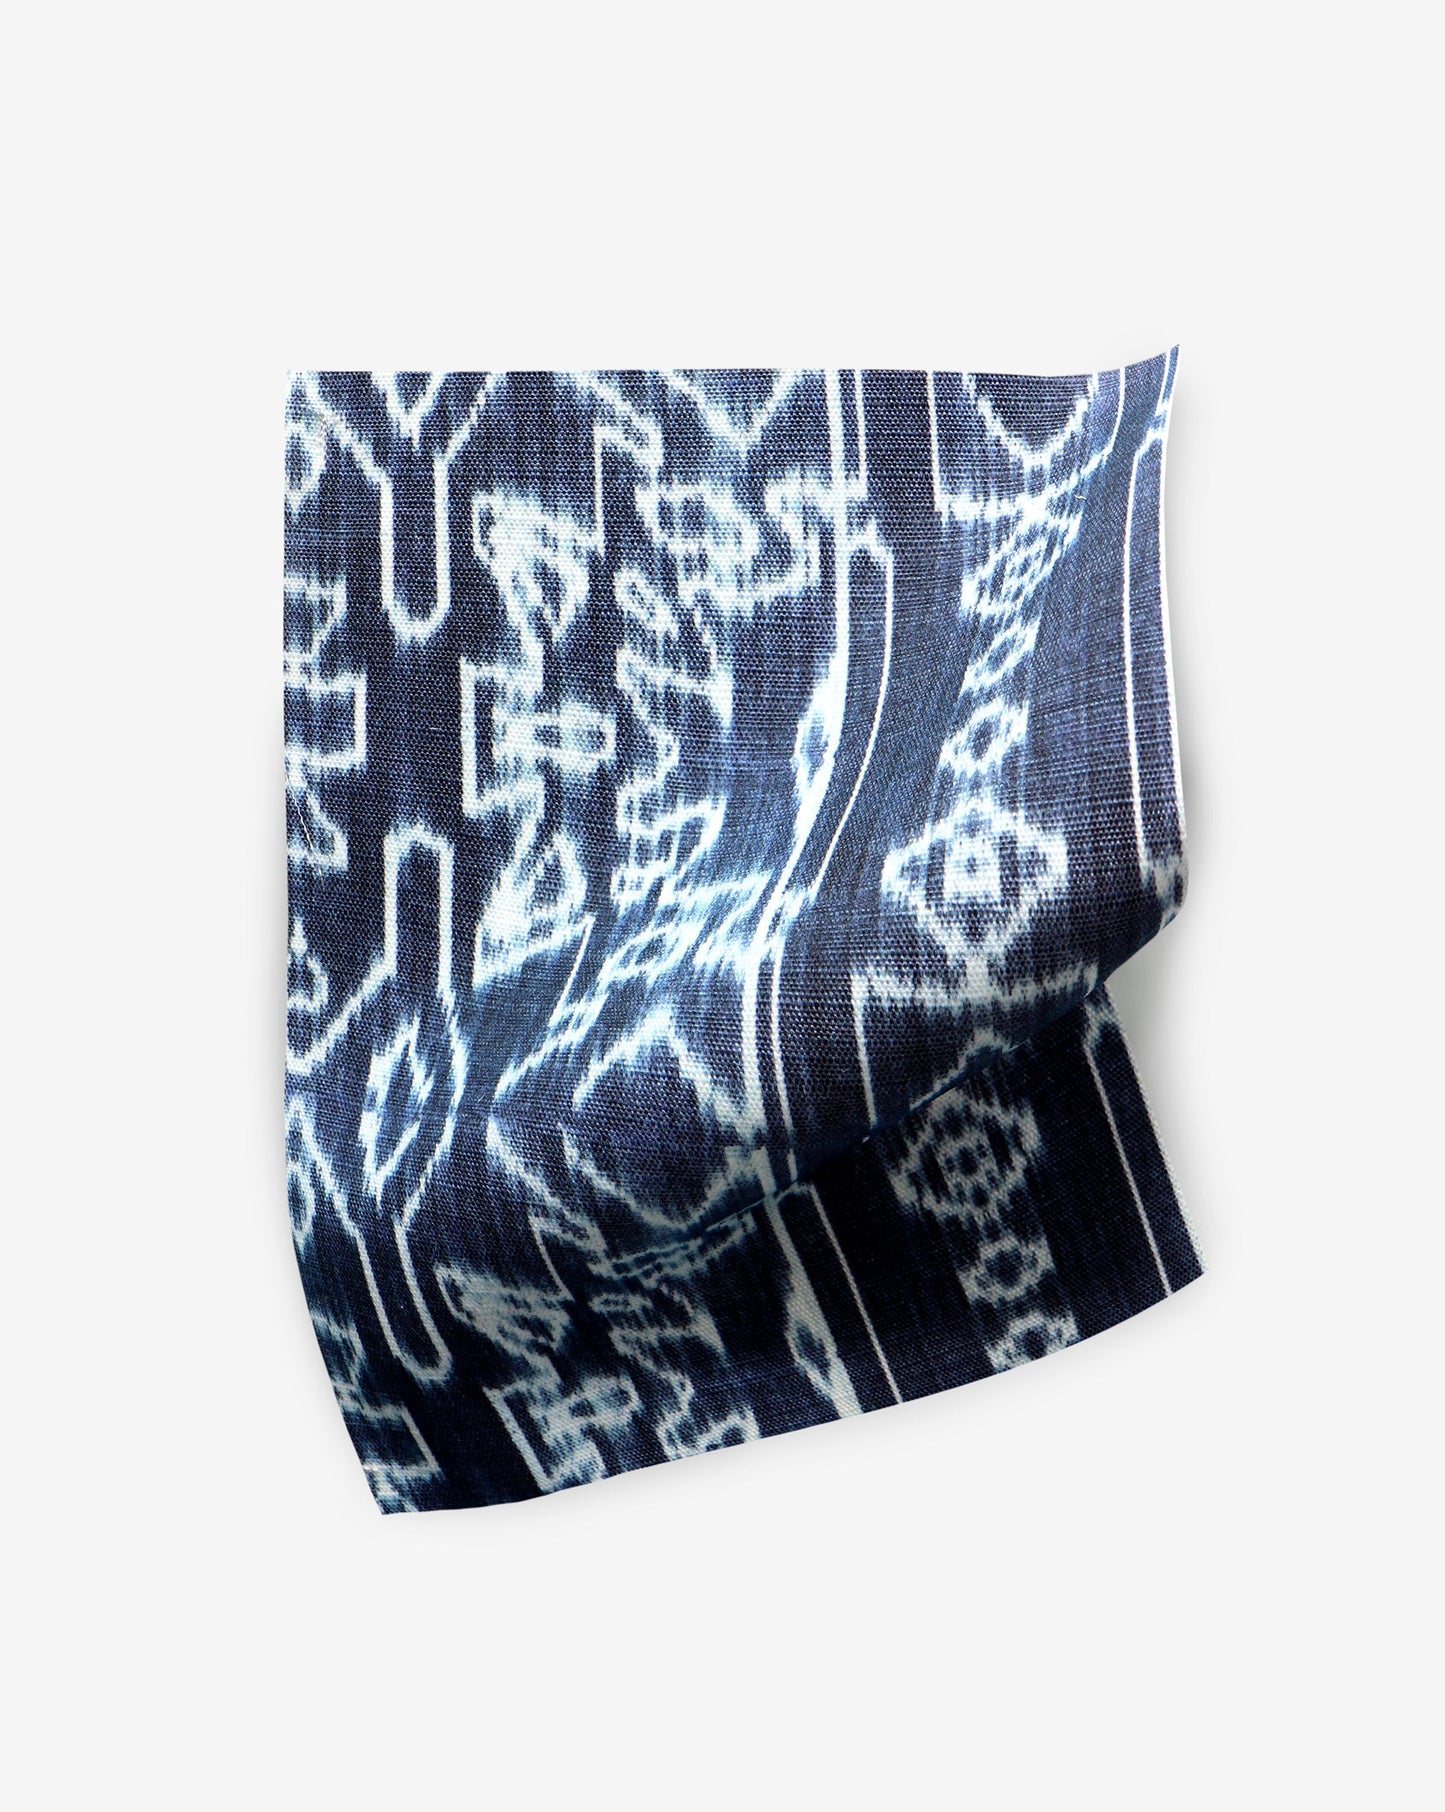 A fabric with the Akimbo Performance Fabric Indigo Ikat pattern